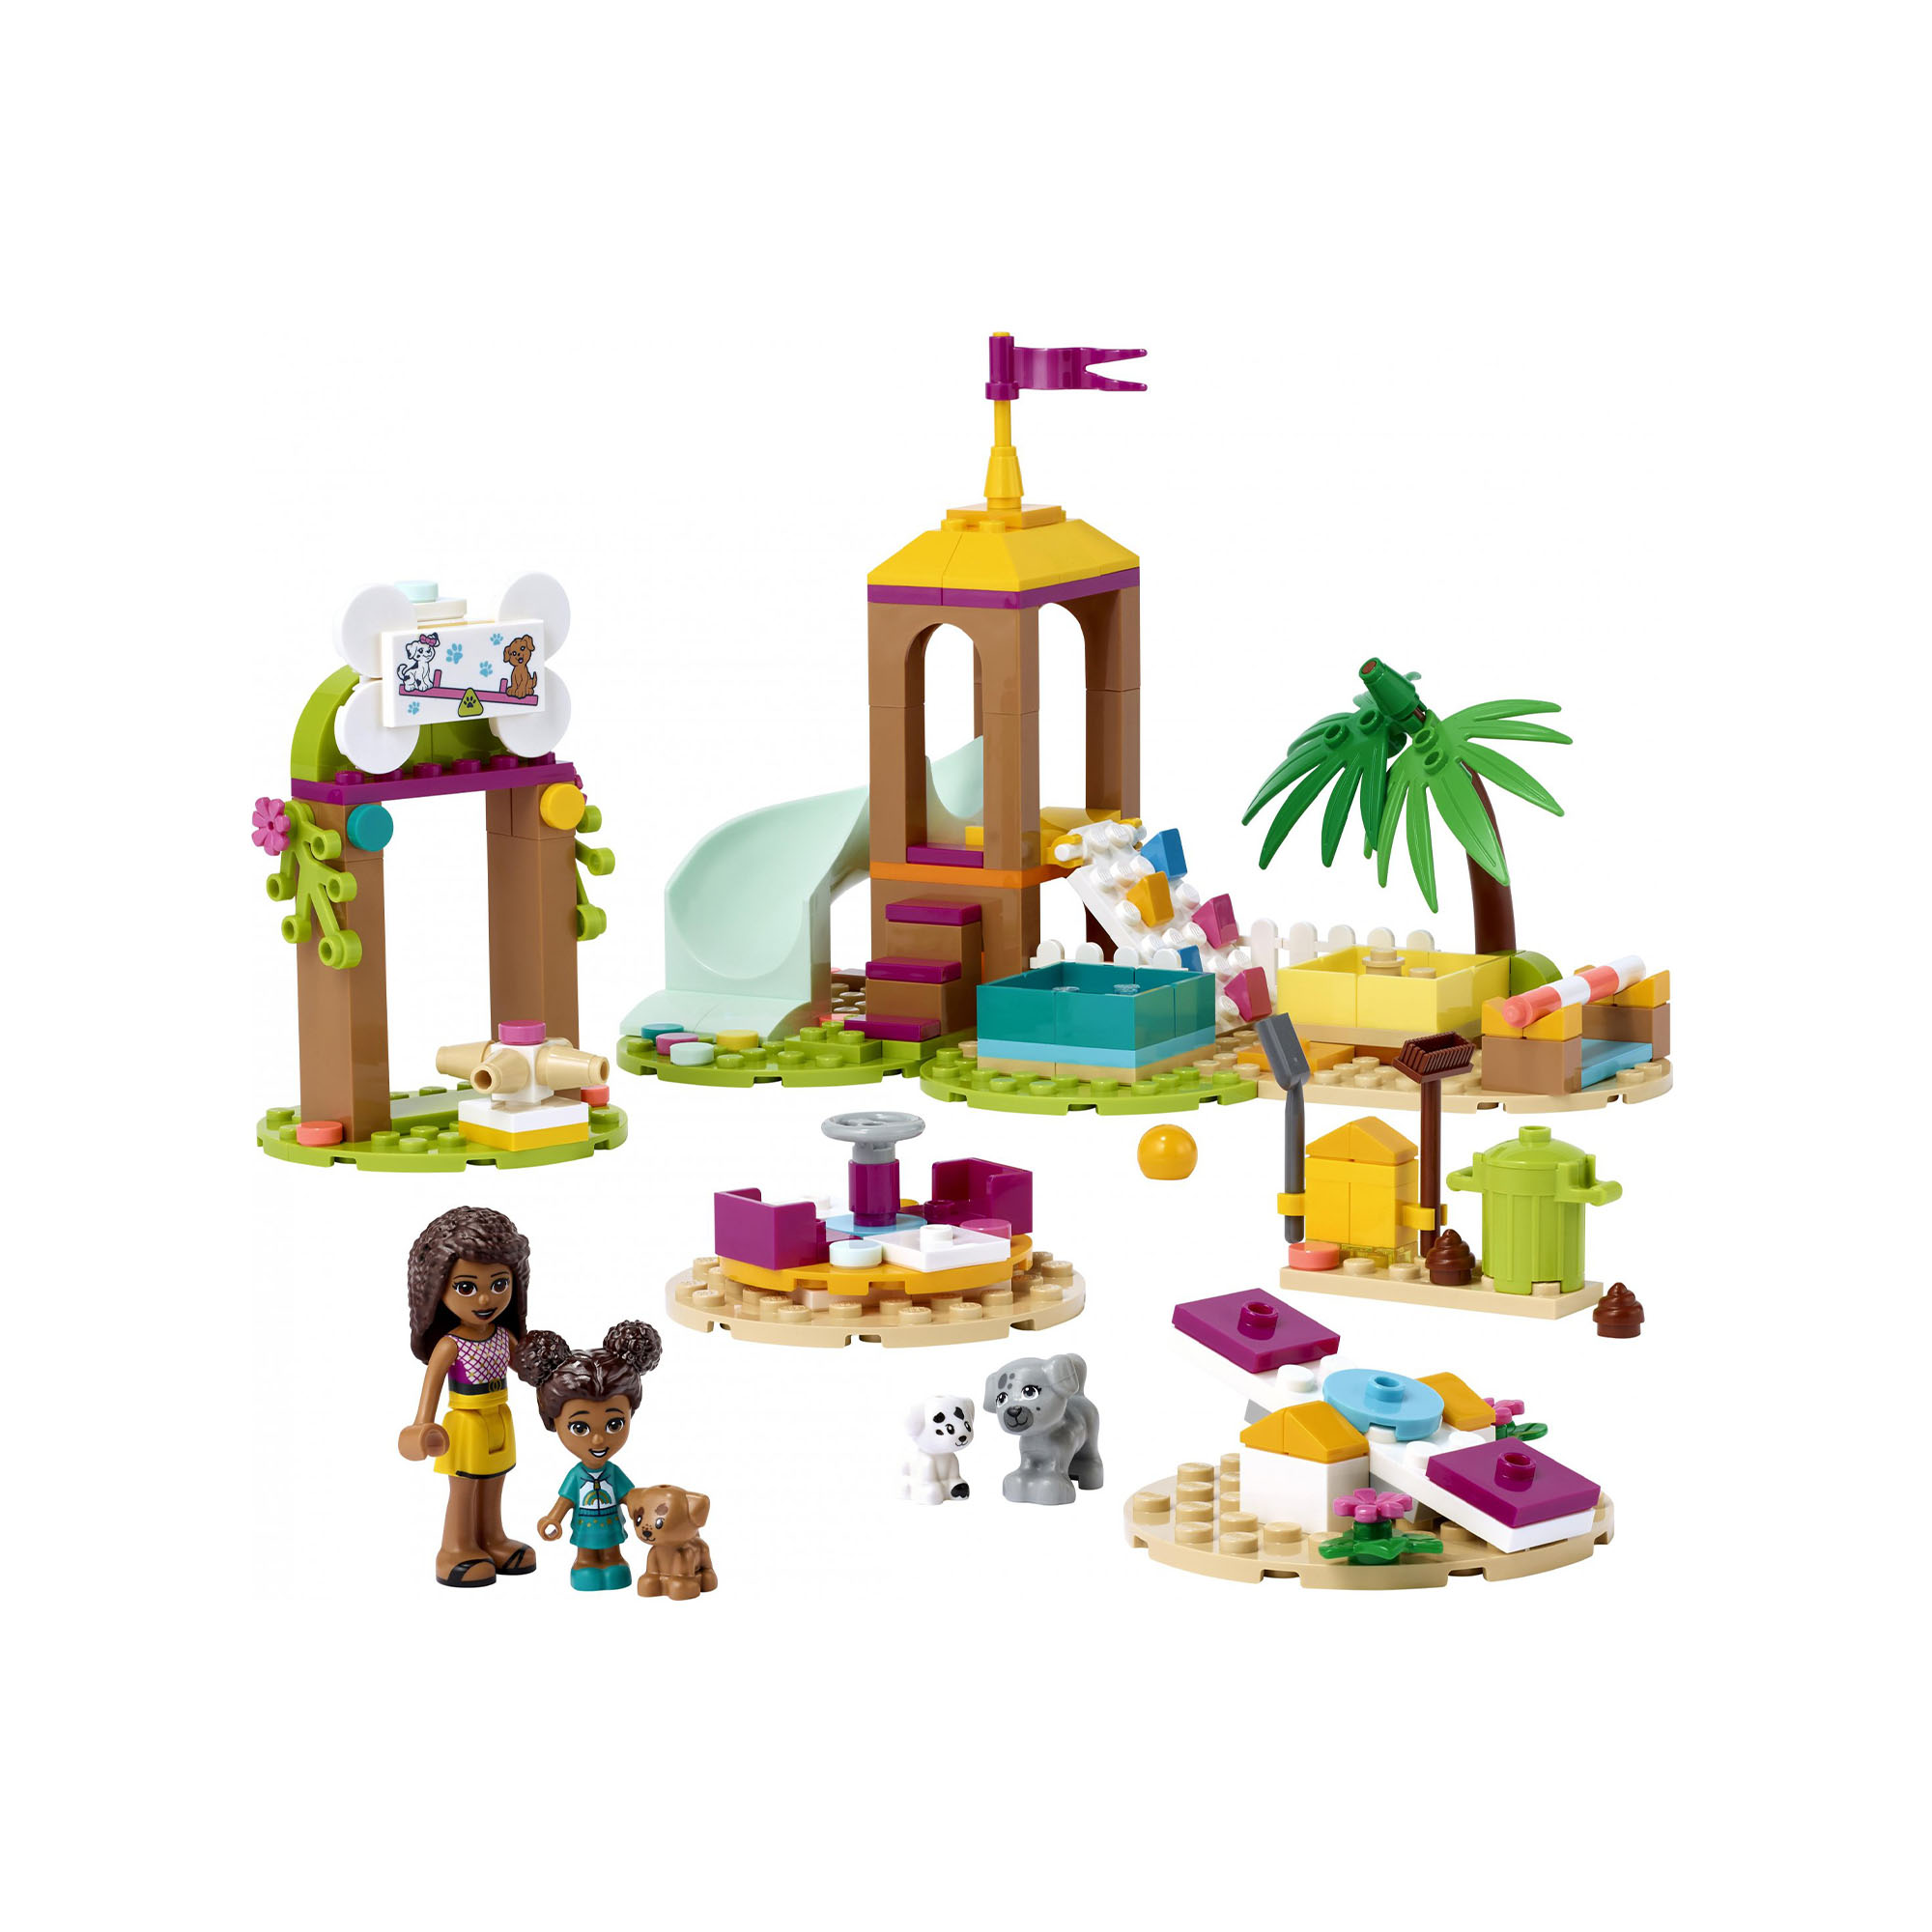 LEGO 41698 Friends Il Parco Giochi dei Cuccioli, Giocattolo con Scivolo e Mini B 41698, , large